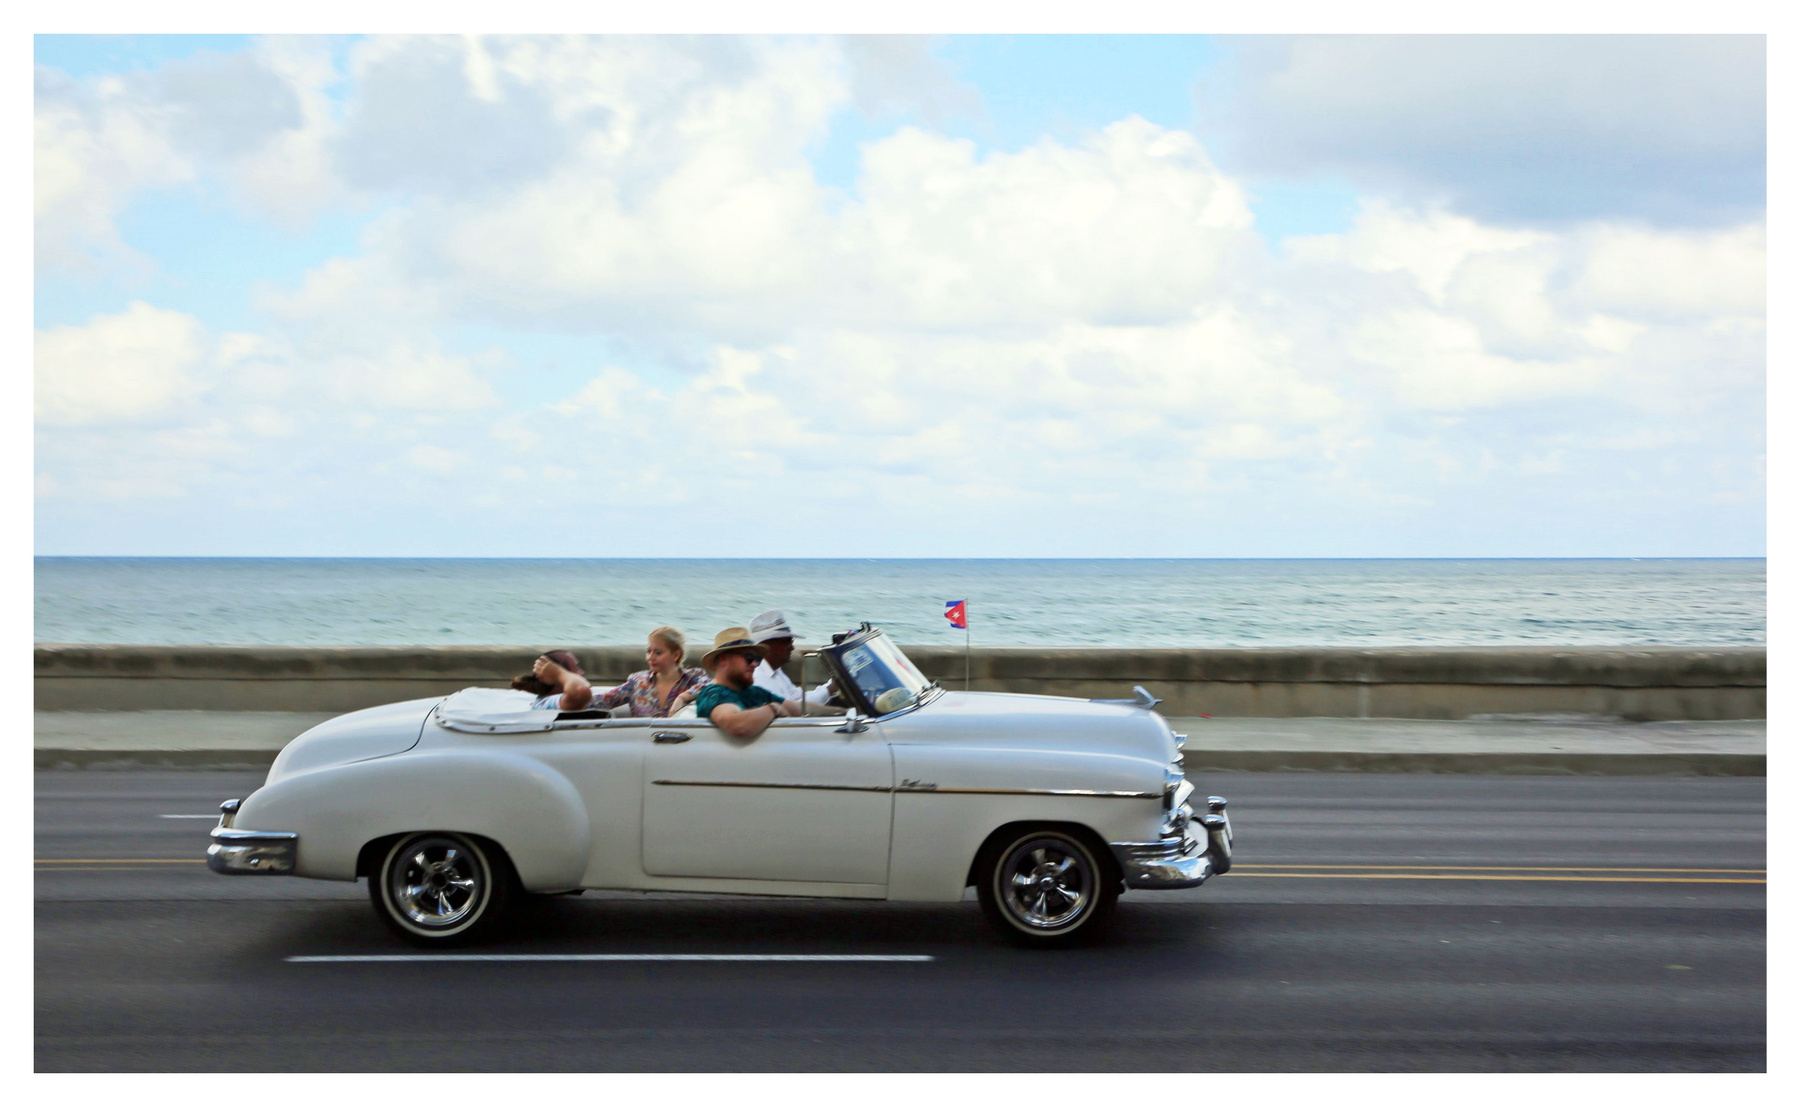 La Habana,mi ciudad cuba la habana vieja libre isla bonita malecón retrocar oldsmobile